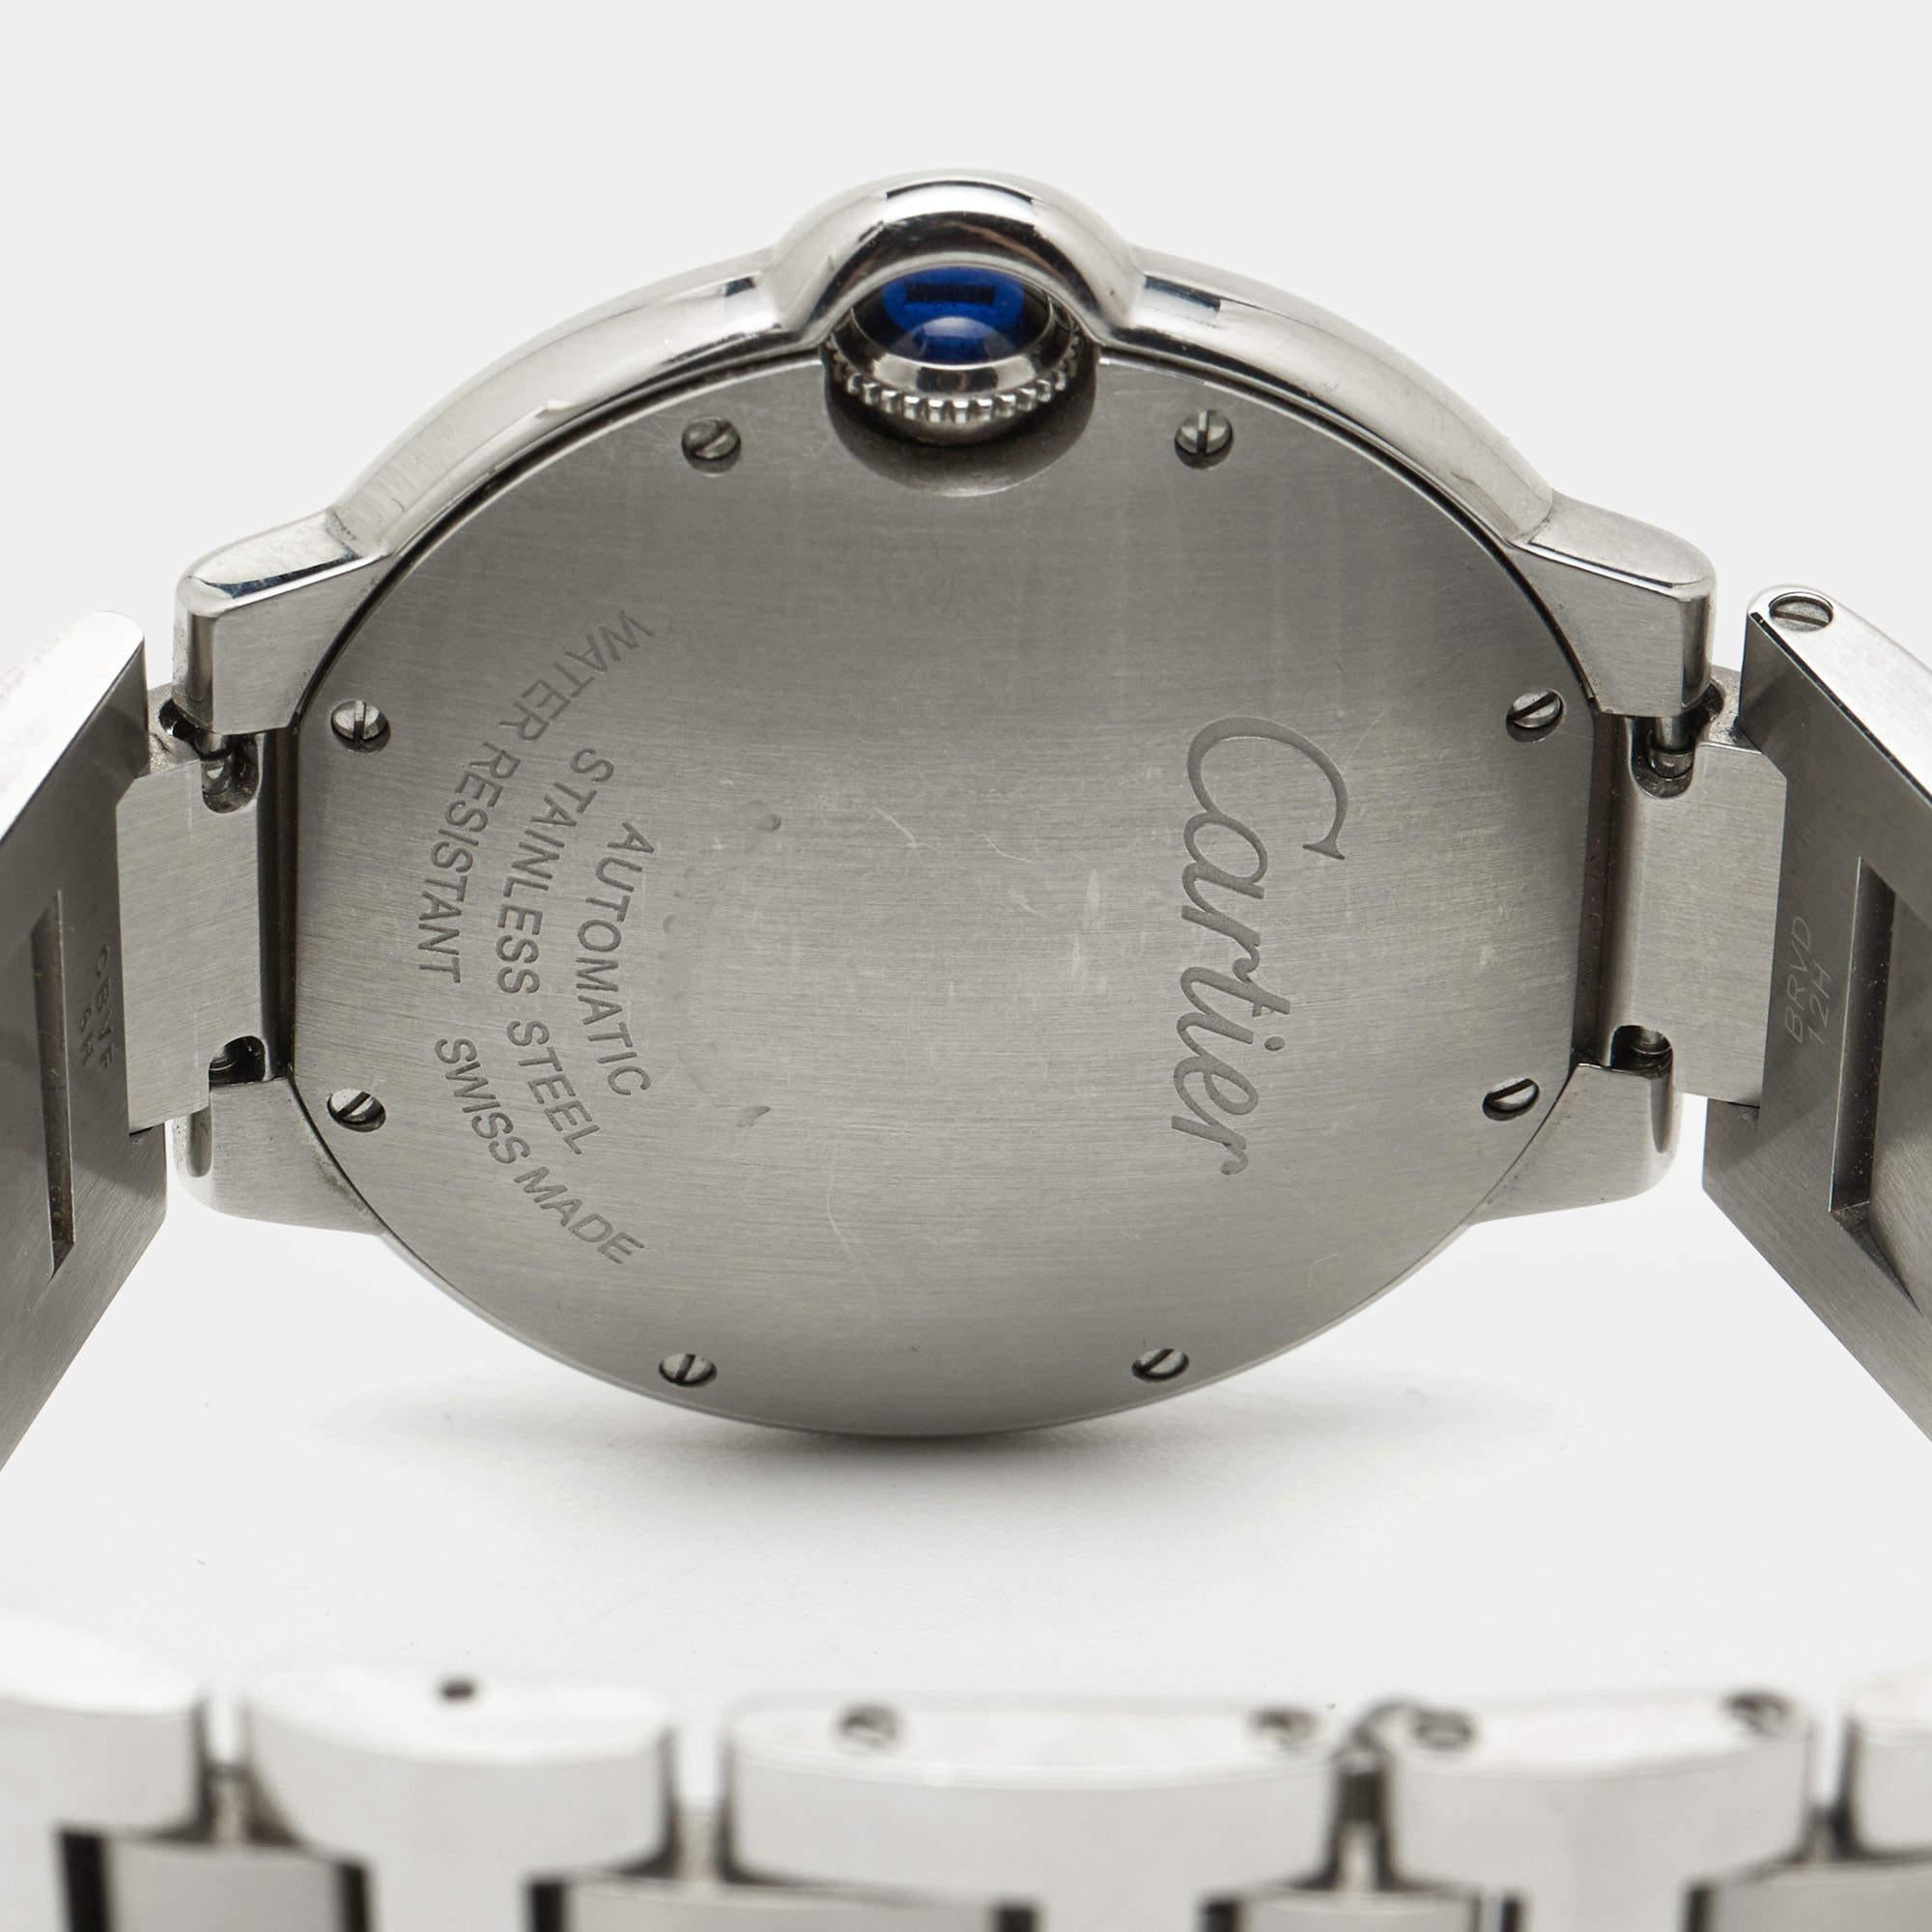 Die 2007 kreierte Cartier Ballon Bleu Uhr ist ein Lied der Details und der Harmonie. Die mittlerweile ikonische Uhr erhält ihre Identität durch die bewachte blaue Blase der Aufzugskrone an der Seite. Die Ballon Bleu WE902075 Uhr, die wir hier haben,